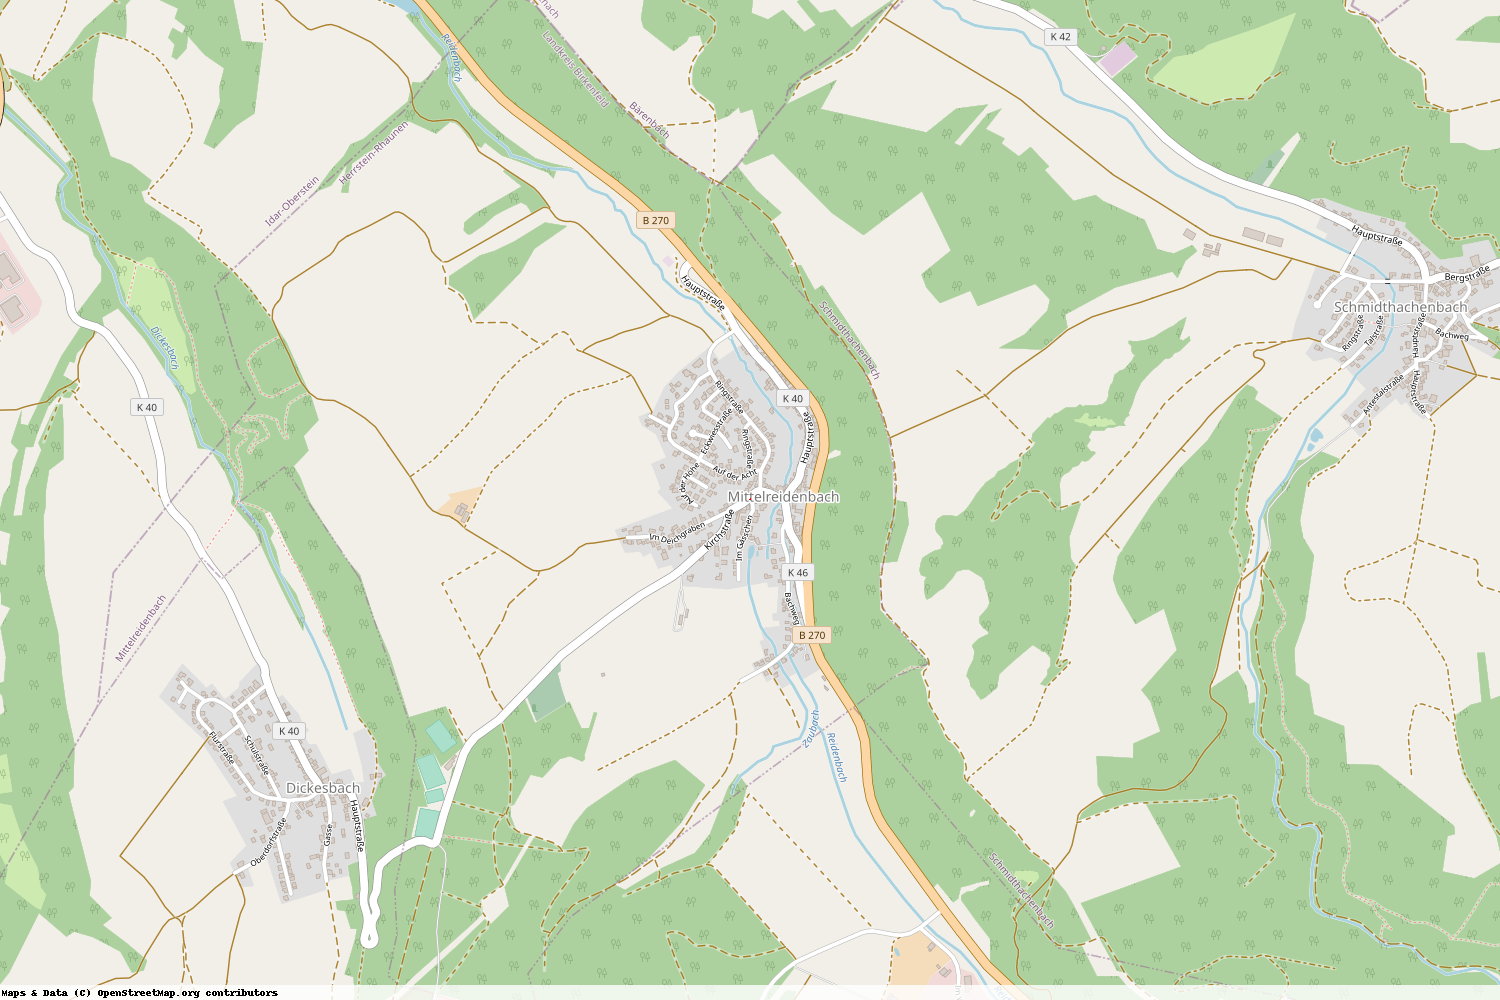 Ist gerade Stromausfall in Rheinland-Pfalz - Birkenfeld - Mittelreidenbach?